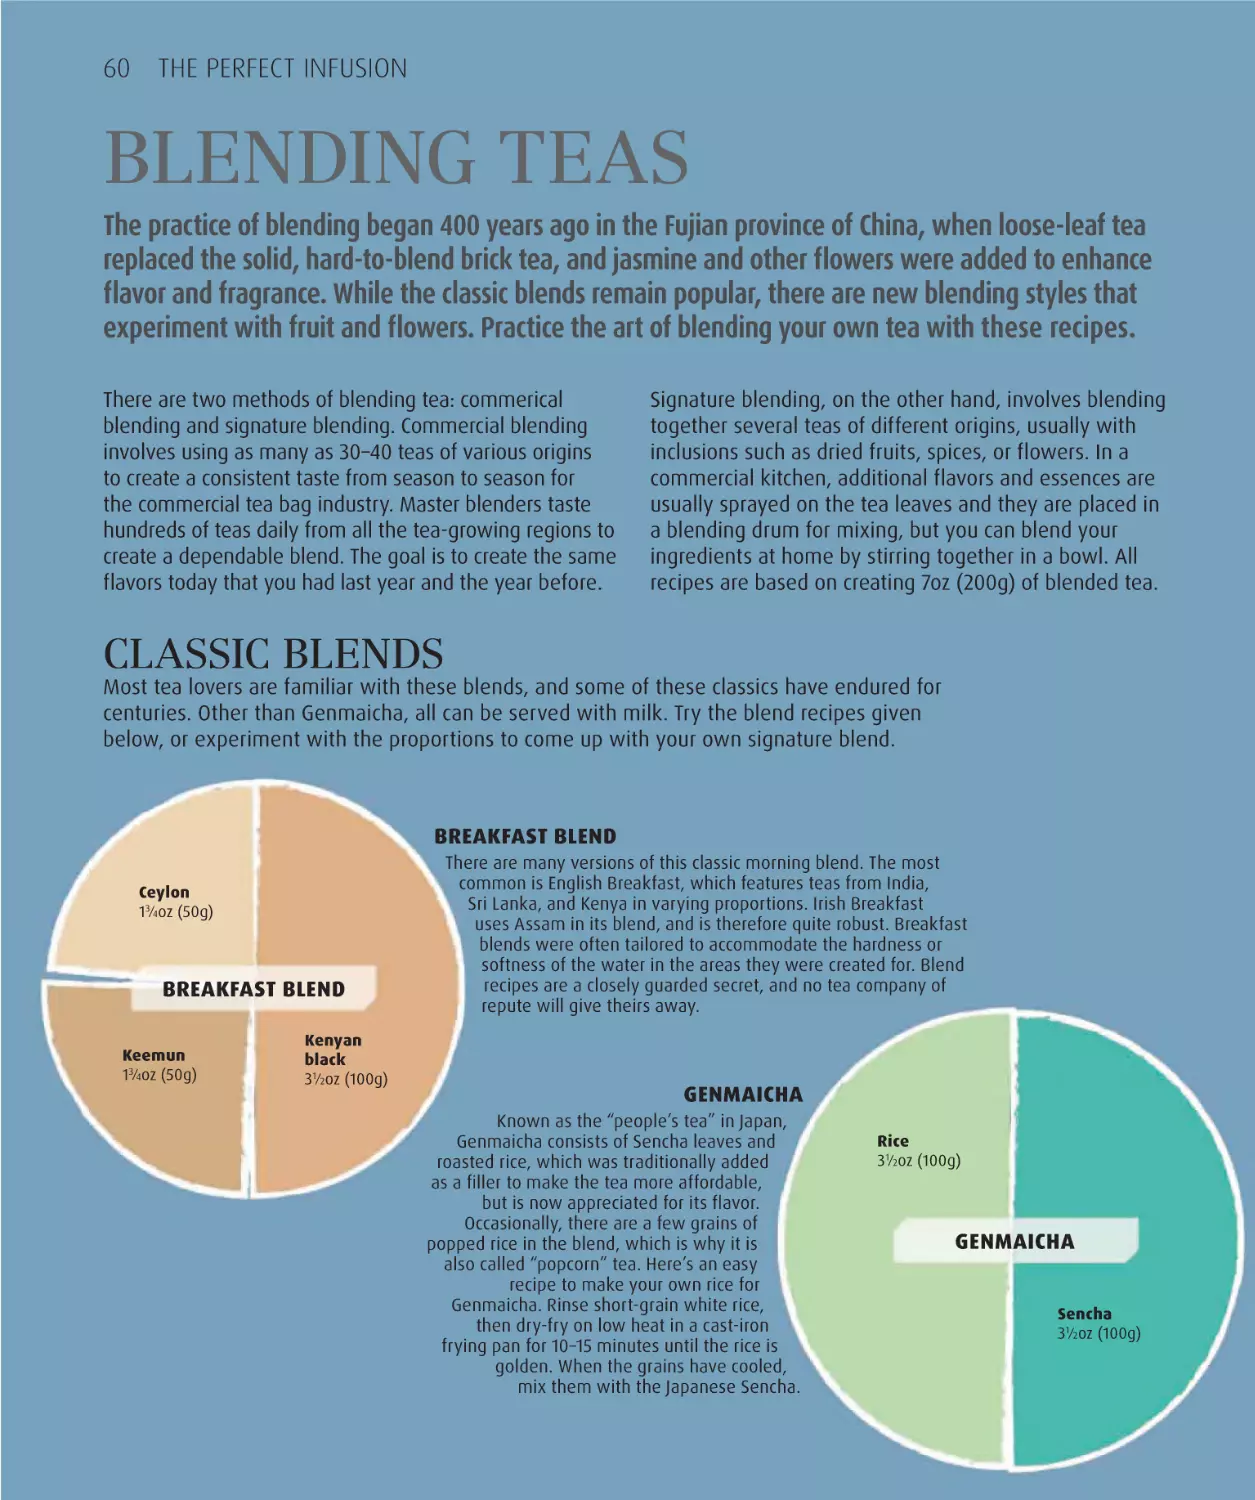 Blending teas 60